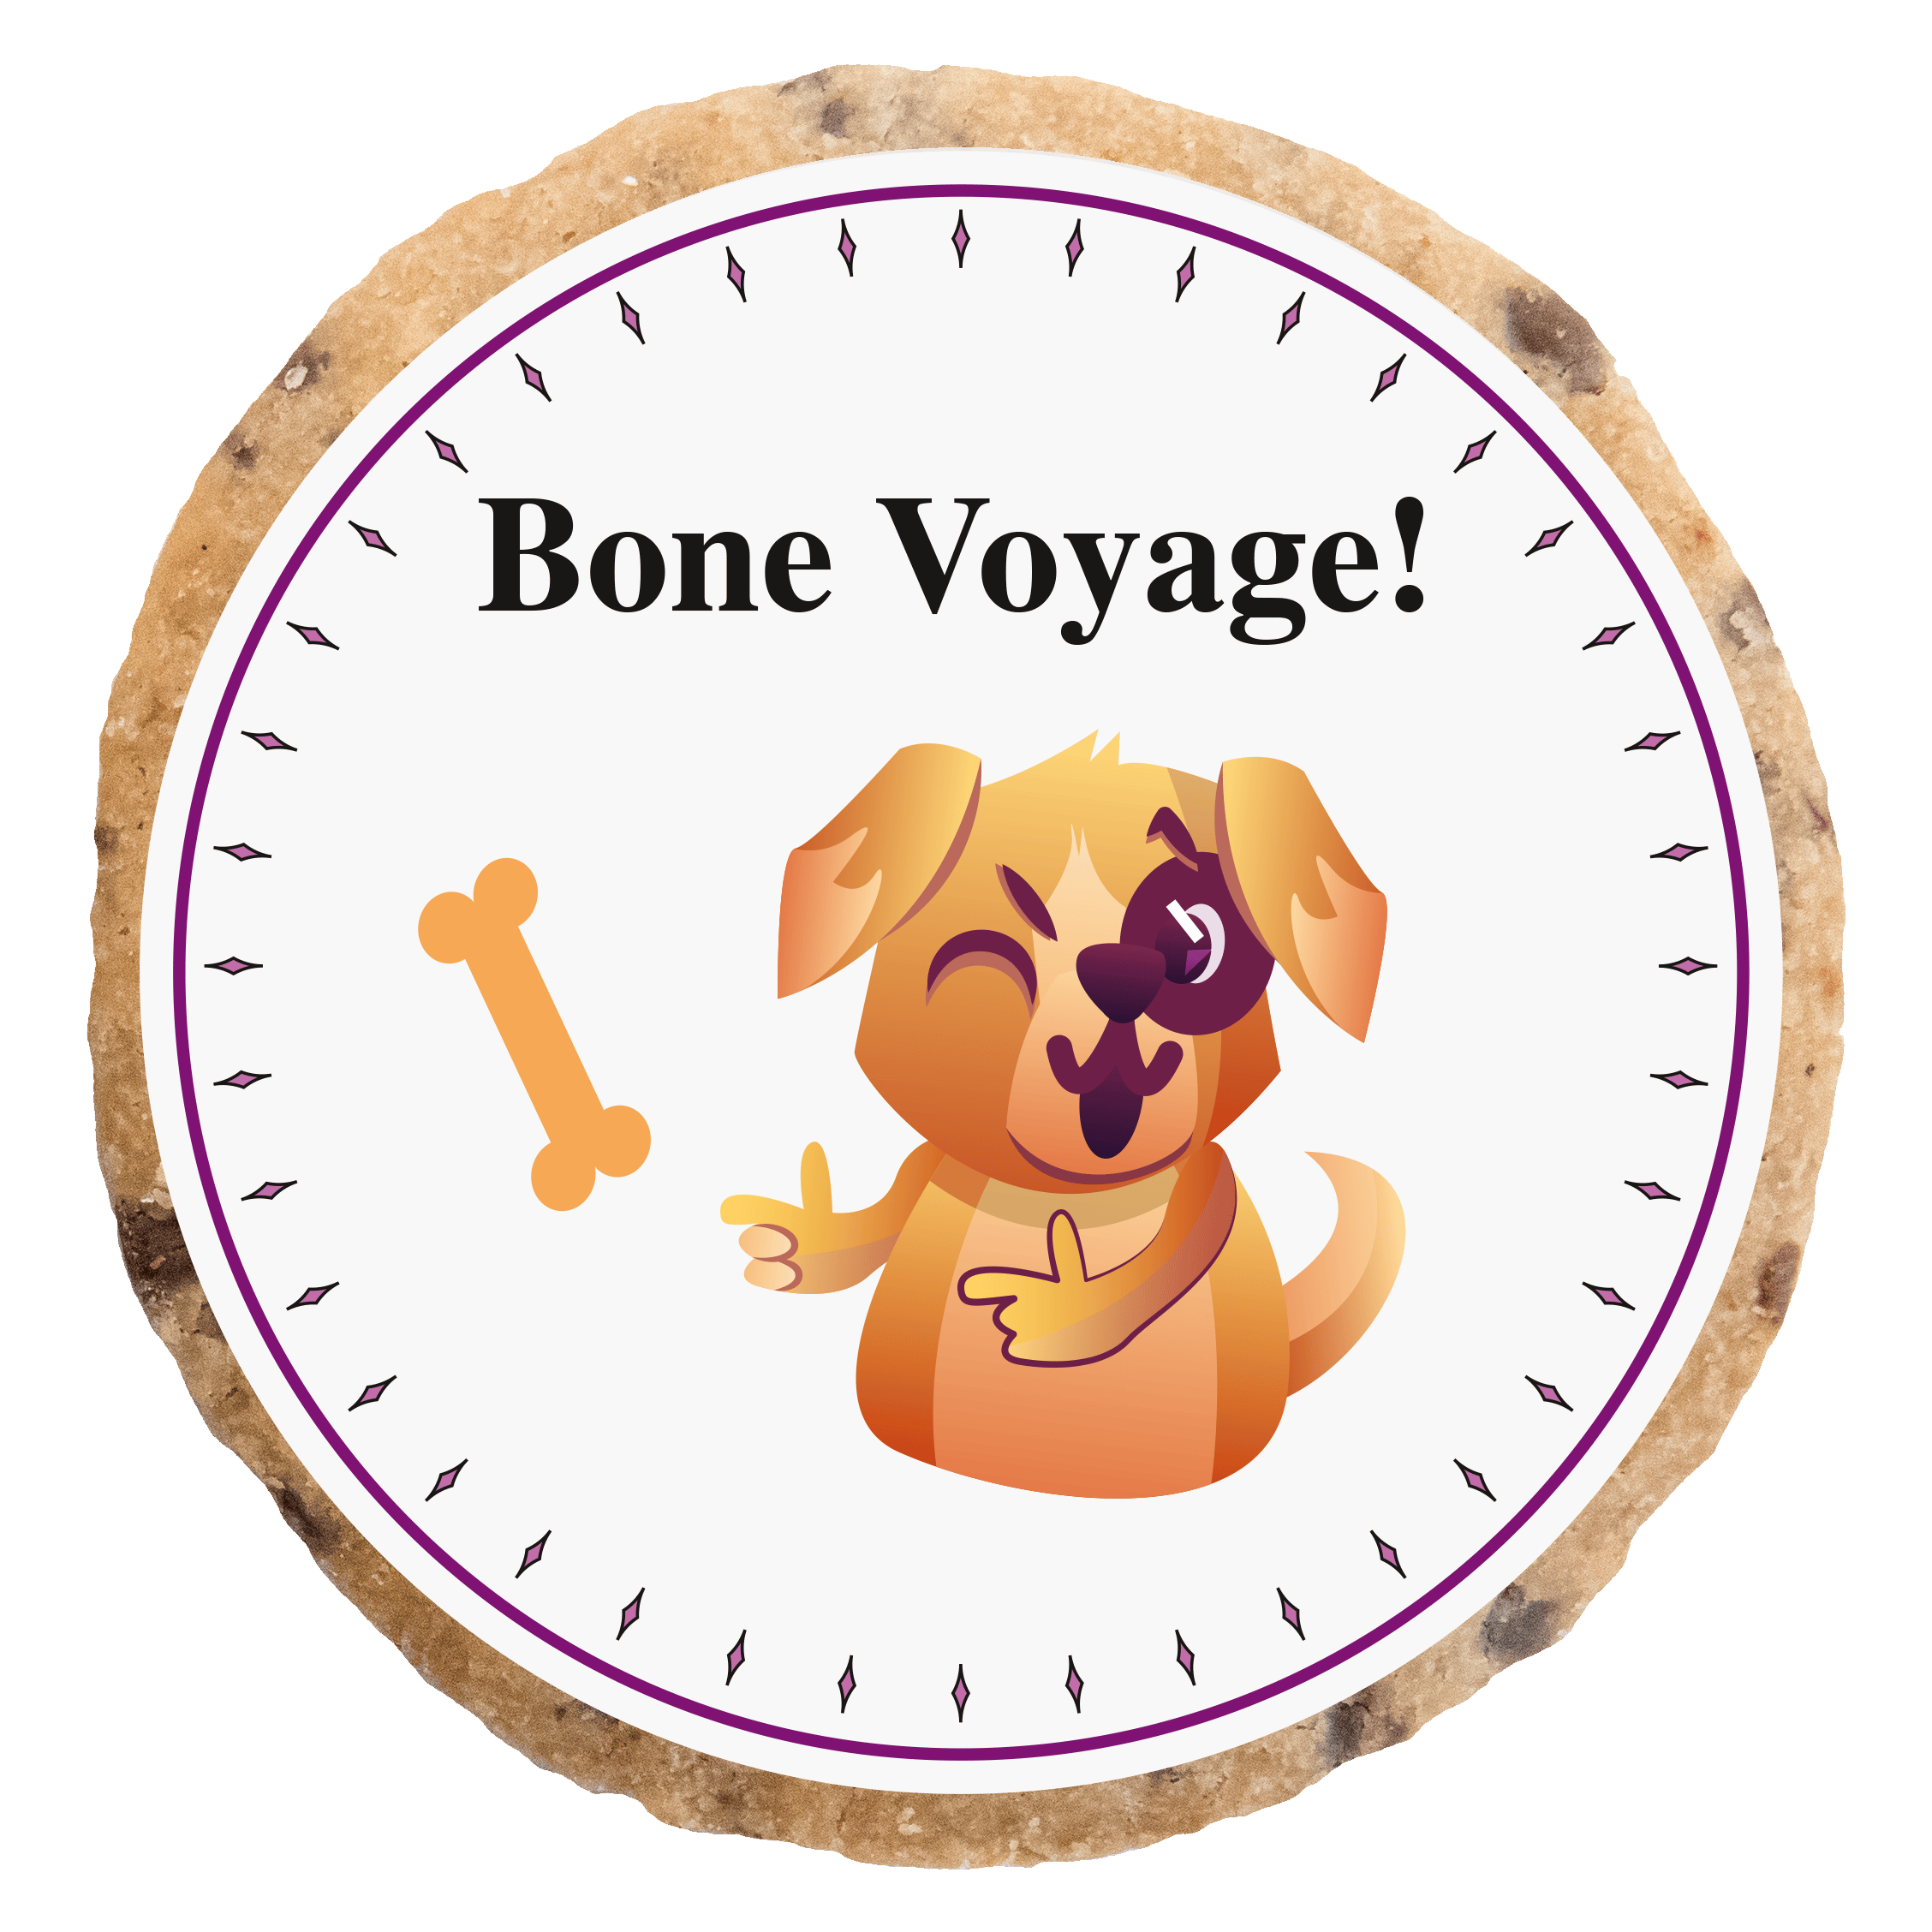 "Bone Voyage" MotivKEKS